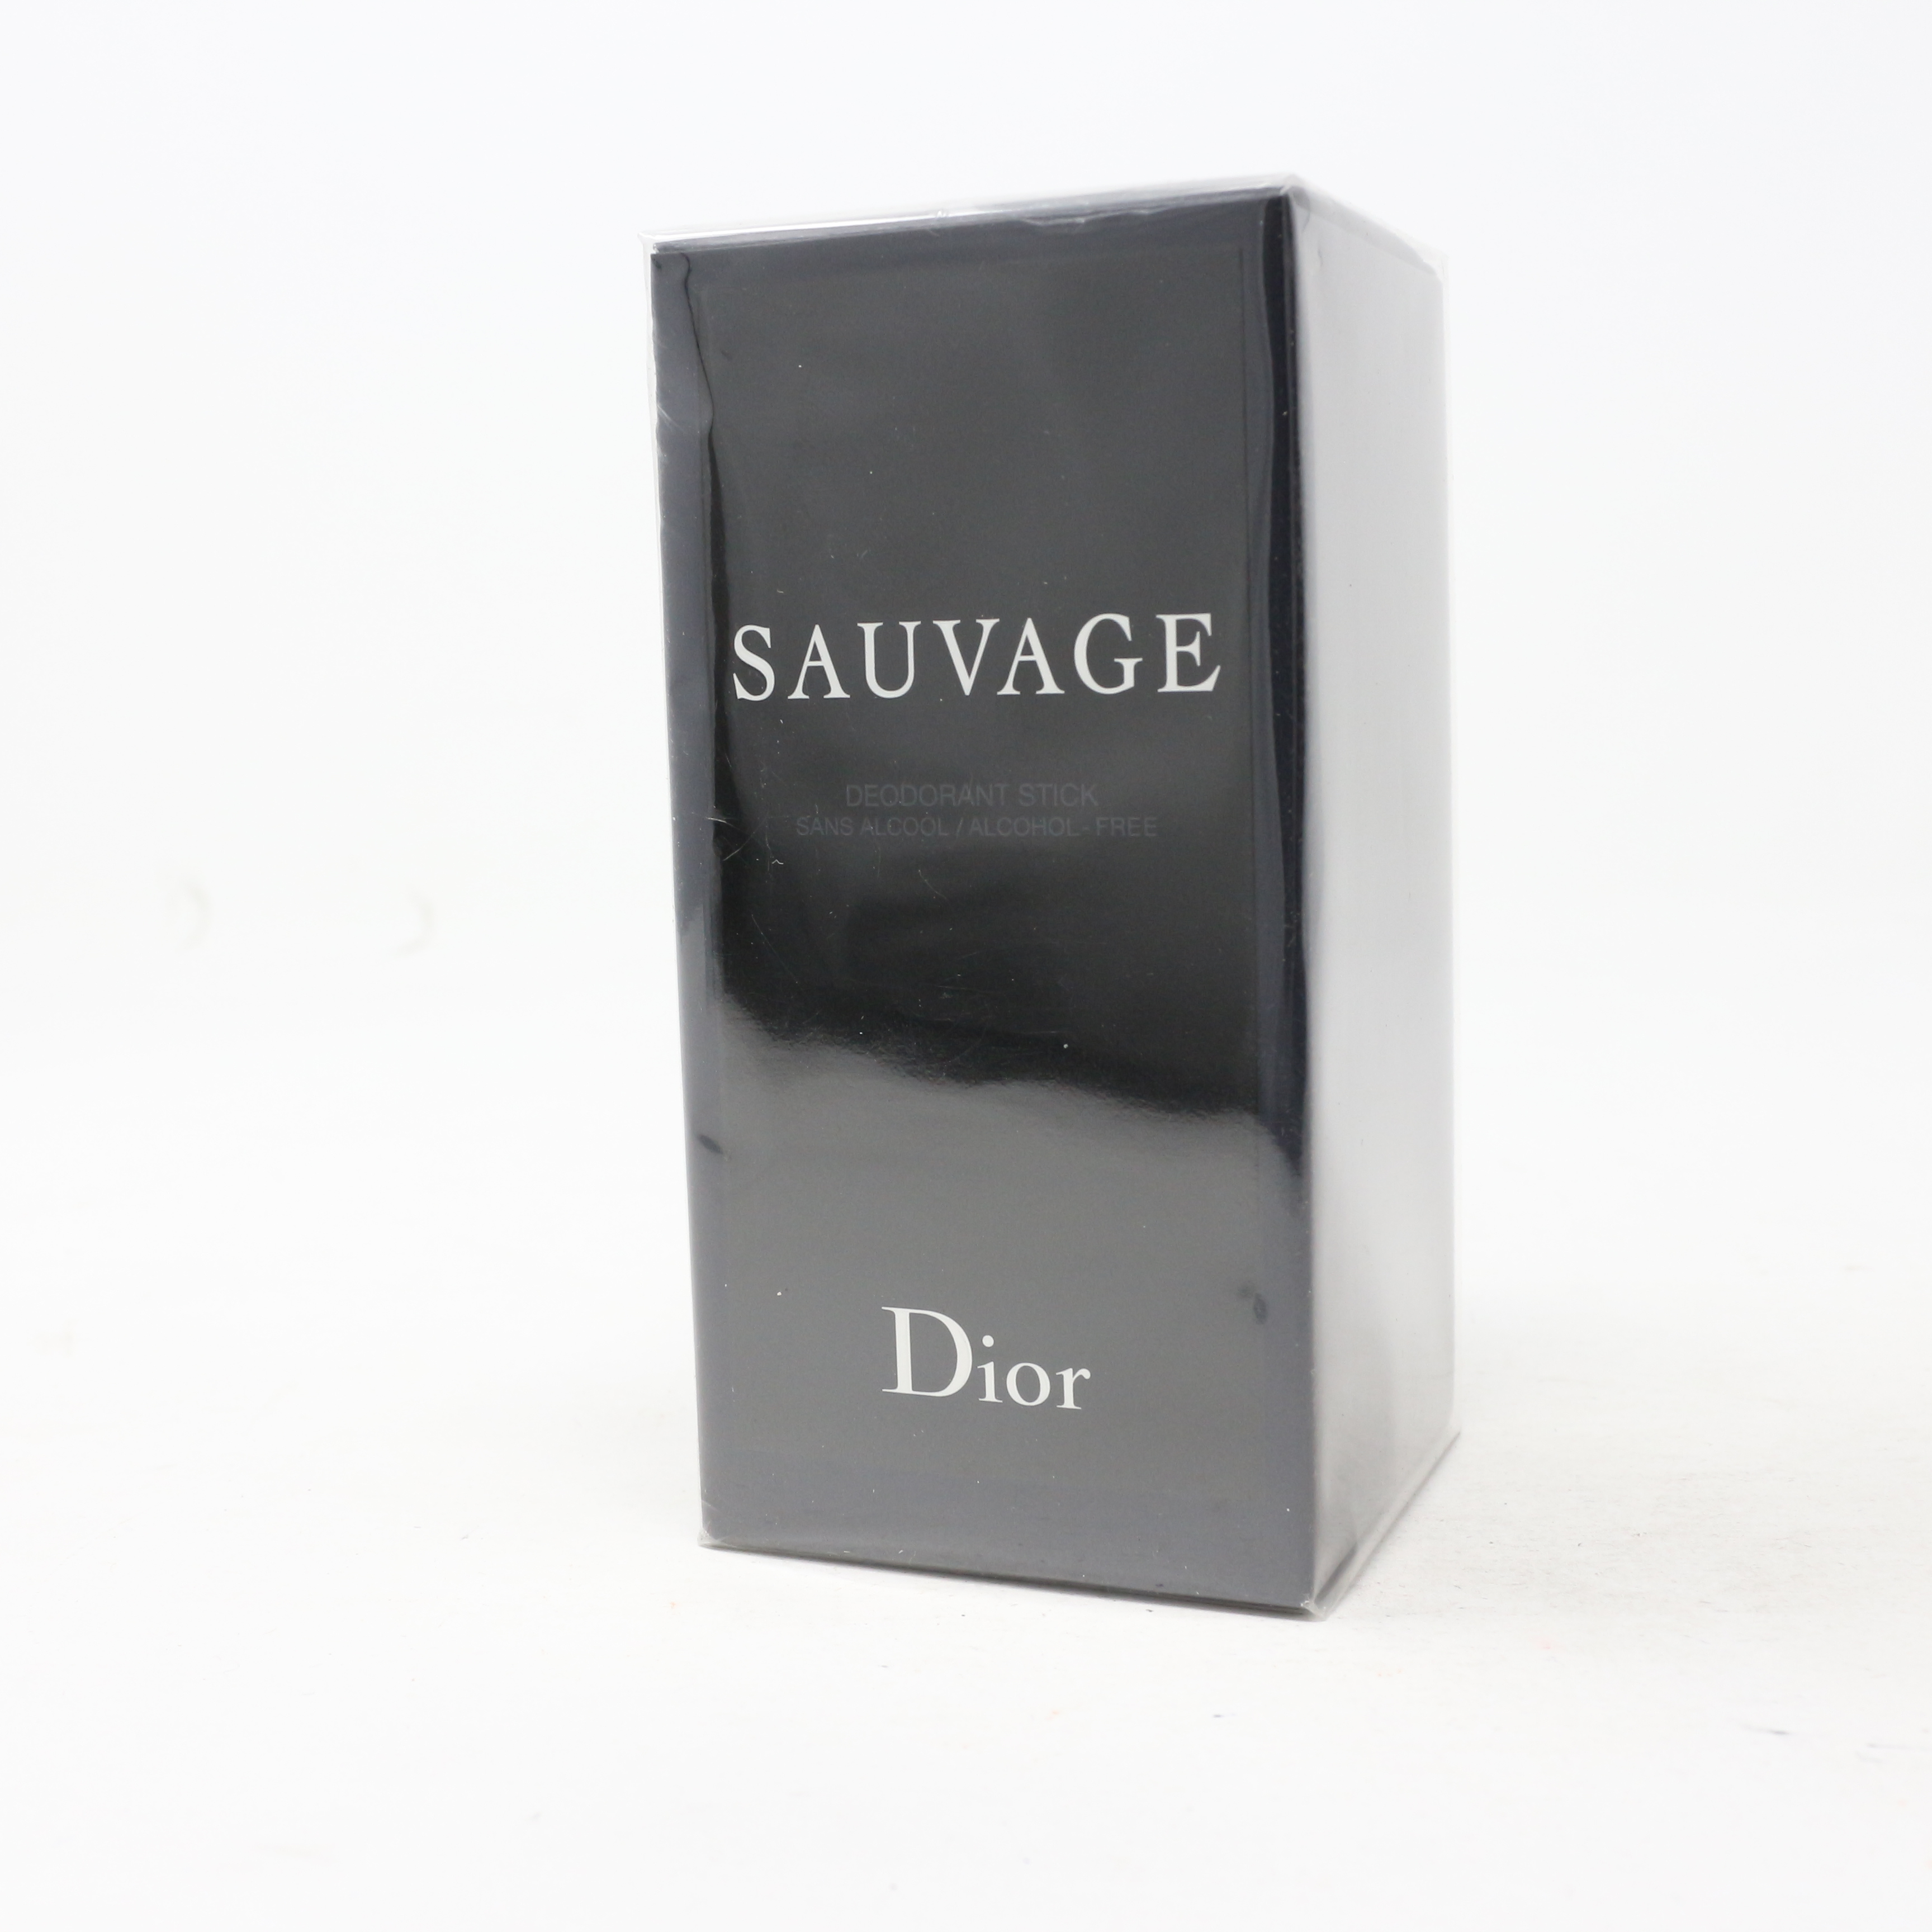 dior sauvage deodorant stick